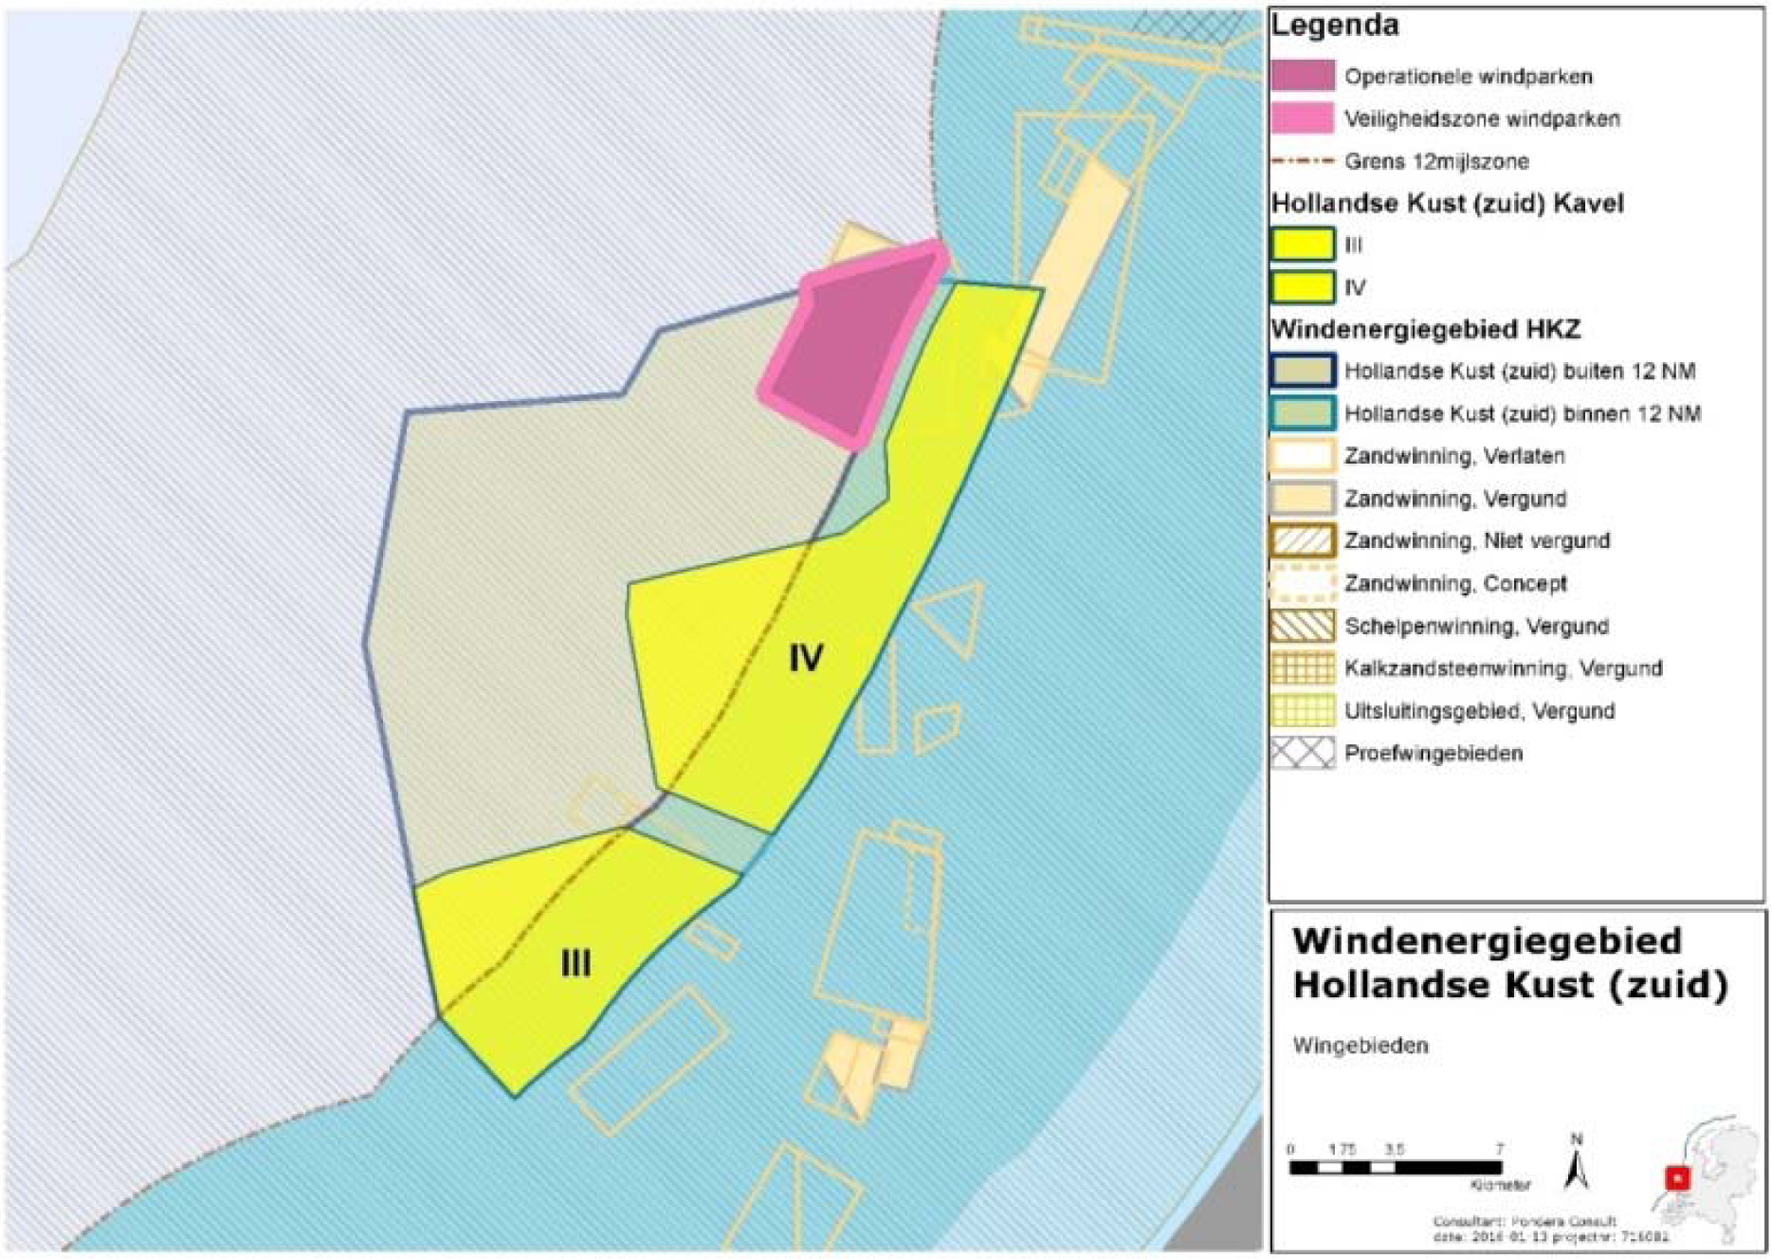 Figuur 8 Windenergiegebied Hollandse Kust (zuid) en wingebieden